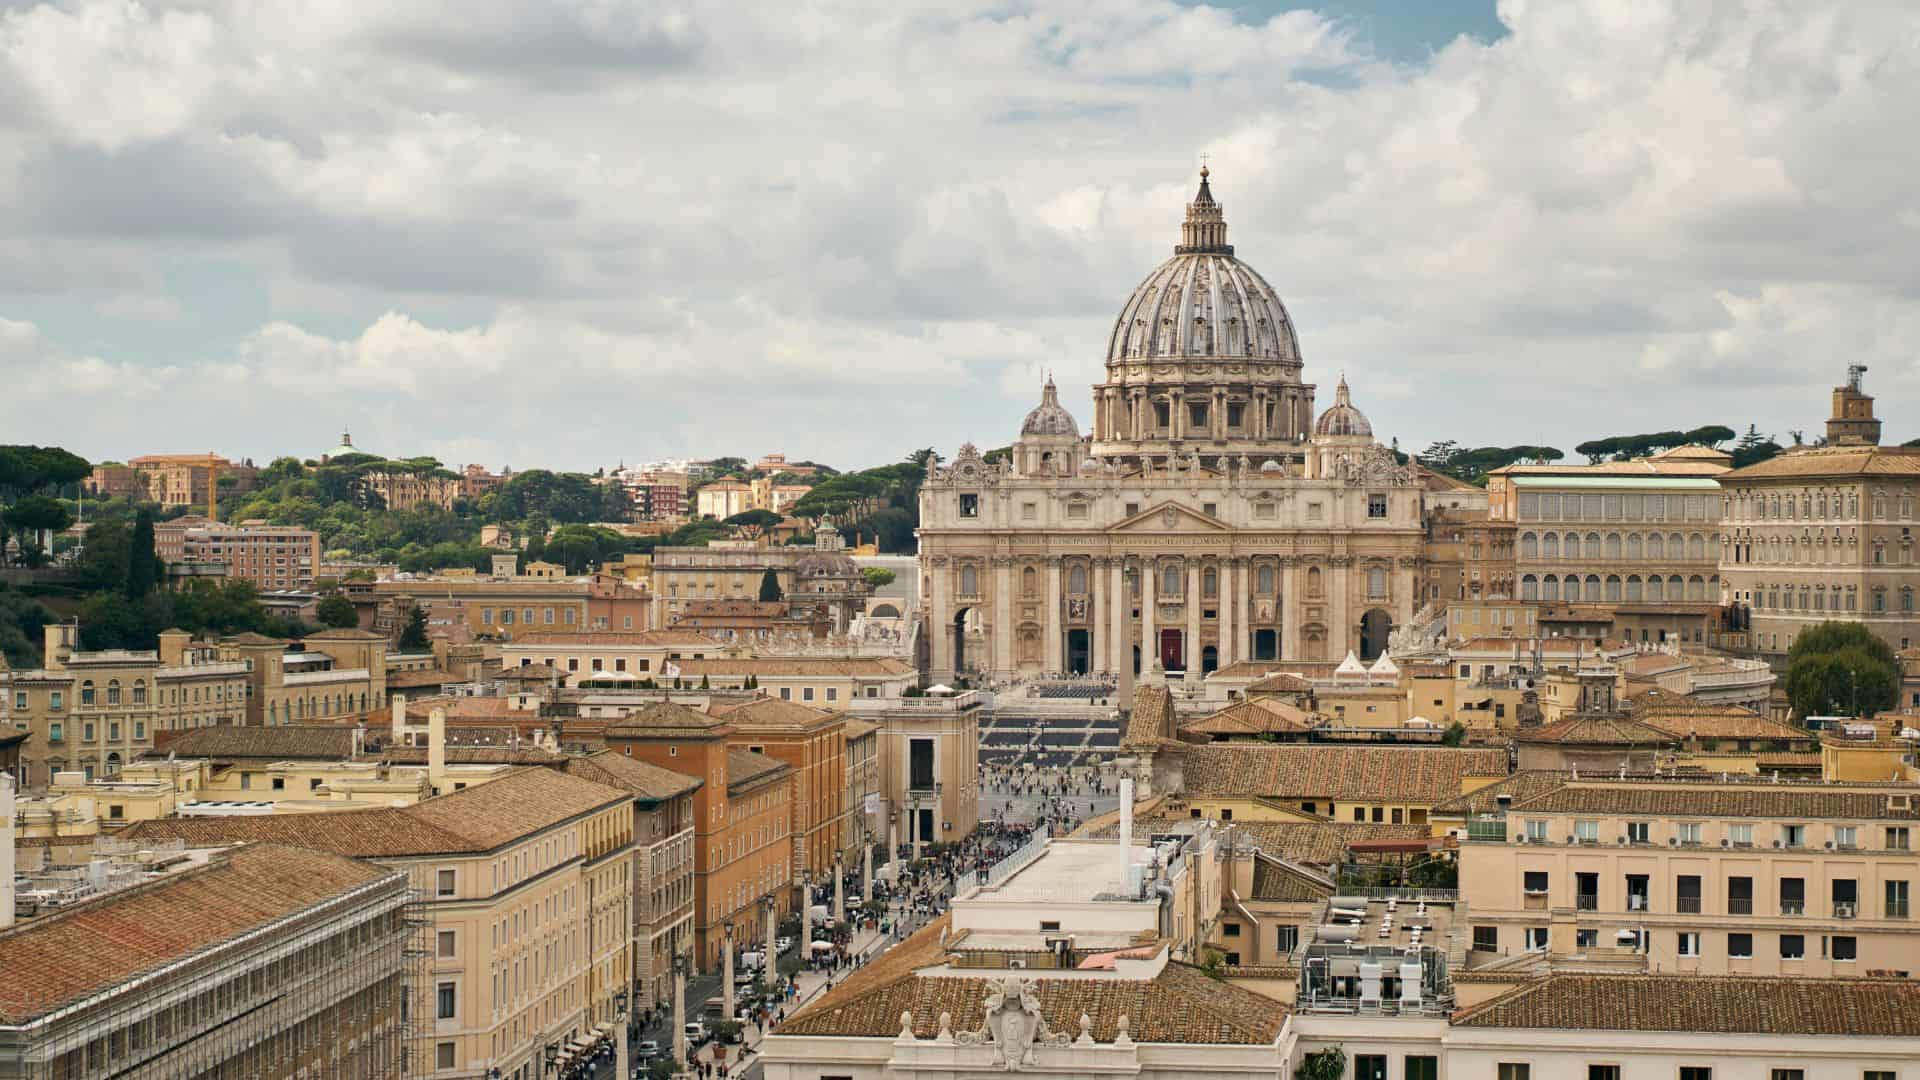 La basilica di San Pietro al Vaticano